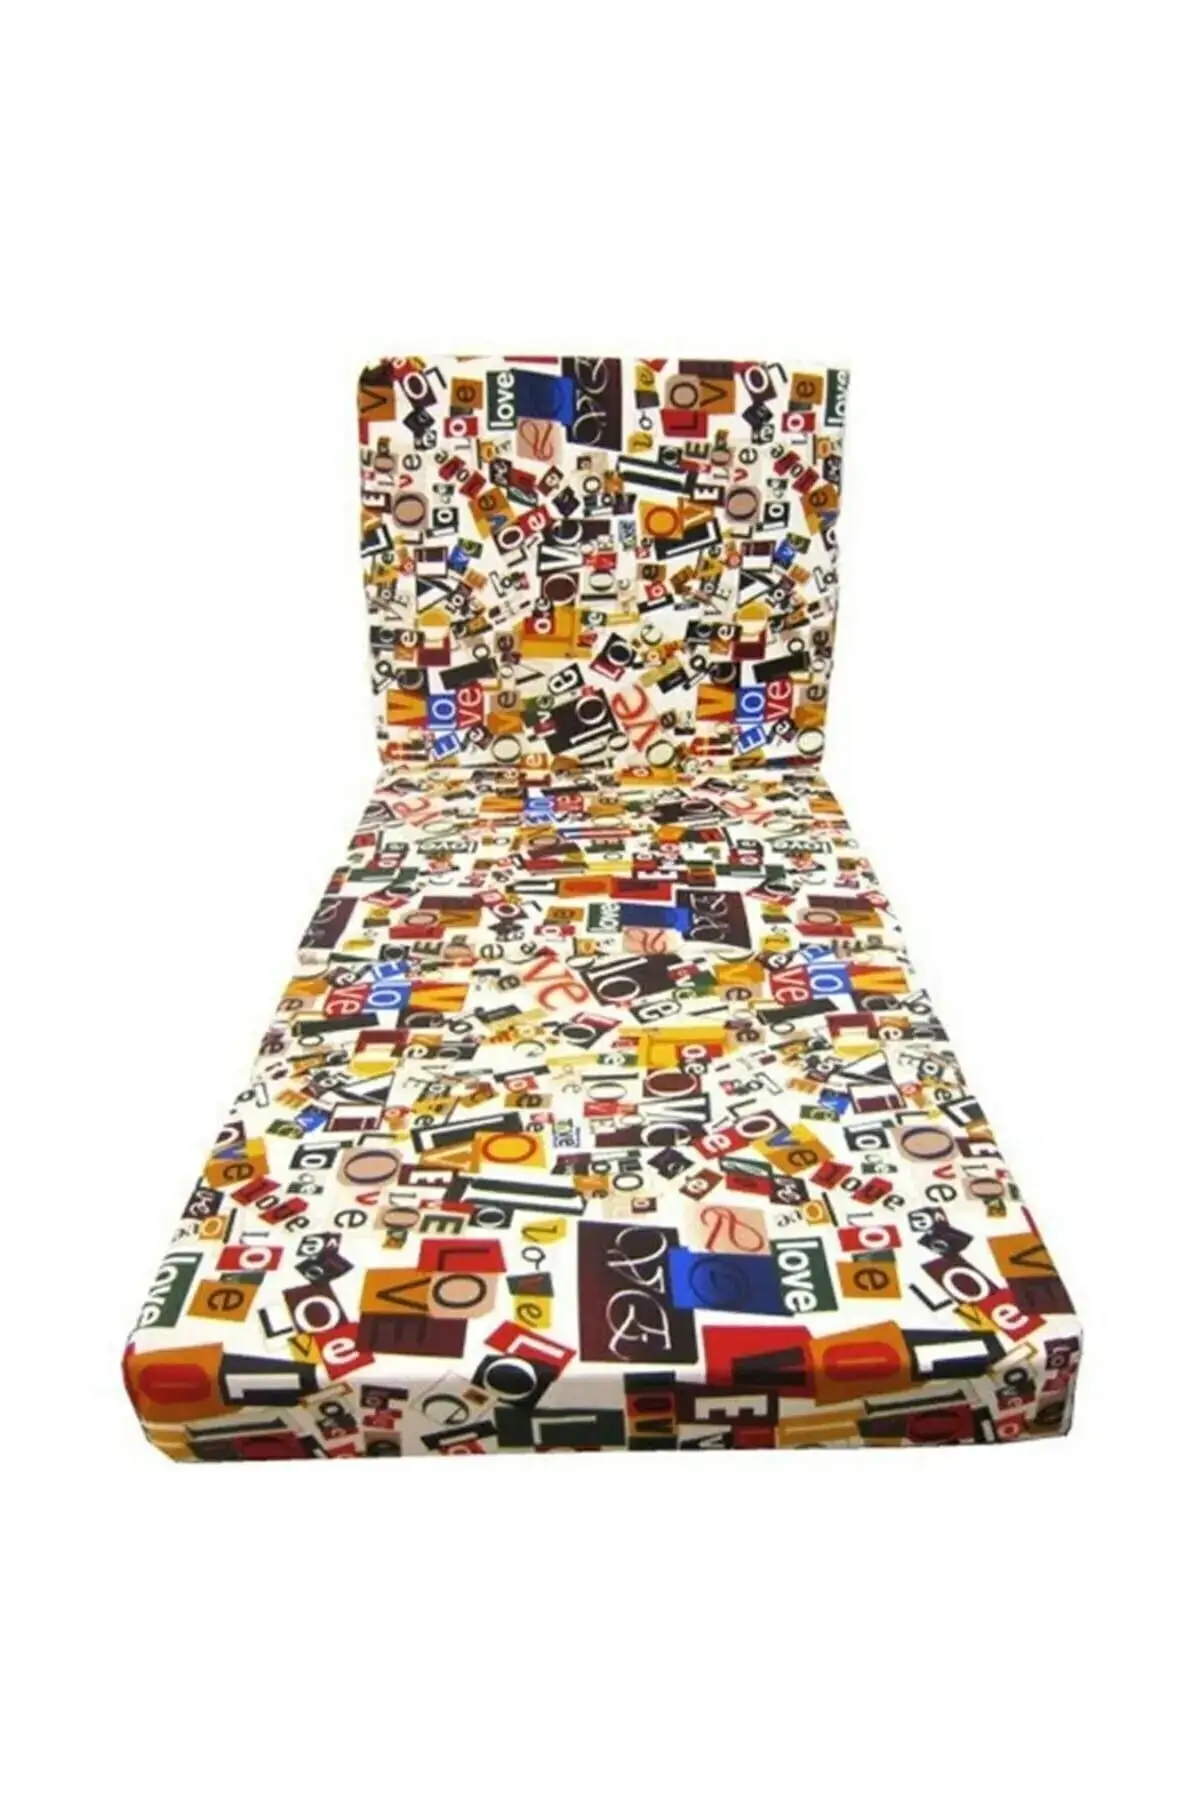 Single Folding Bed Sponge Bed Cushion 70x180 Cm Love Pattern